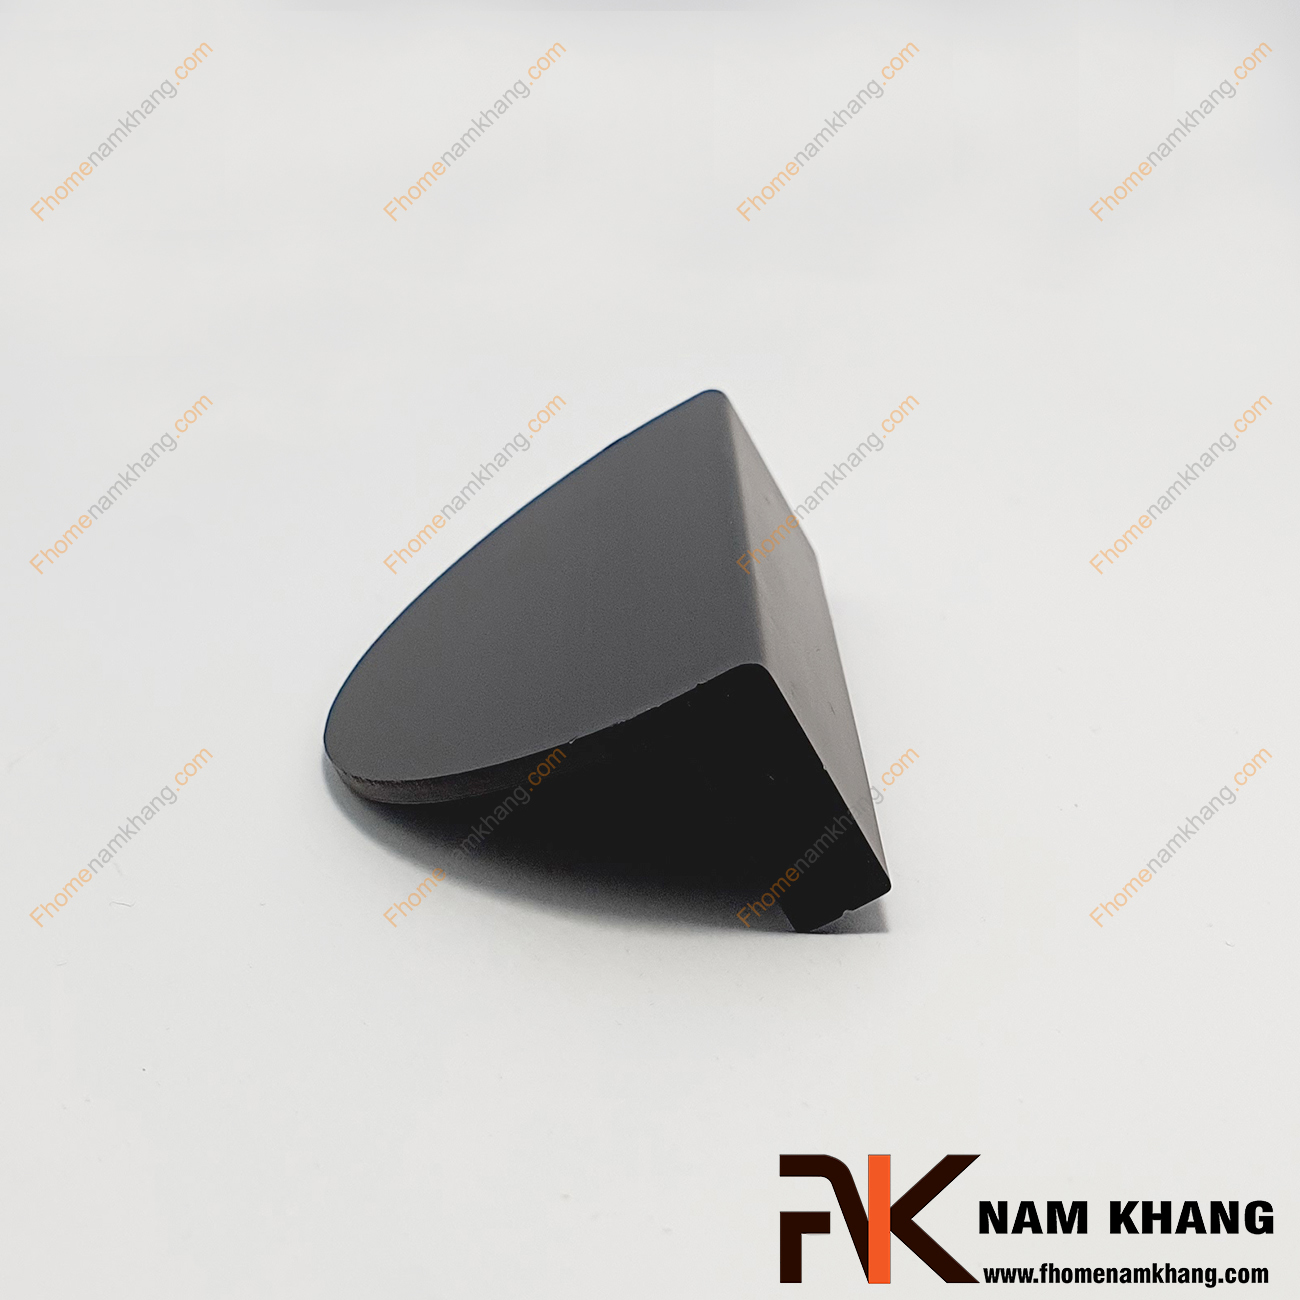 Tay nắm tủ dạng bán nguyệt dạng trơn màu đen NK286BN-64D là dạng tay nắm tủ bán nguyệt ghép đôi độc đáo. Sản phẩm có thiết kế cong góc vuông và có độ dày cho cảm nắm cầm kéo thoải mái. 